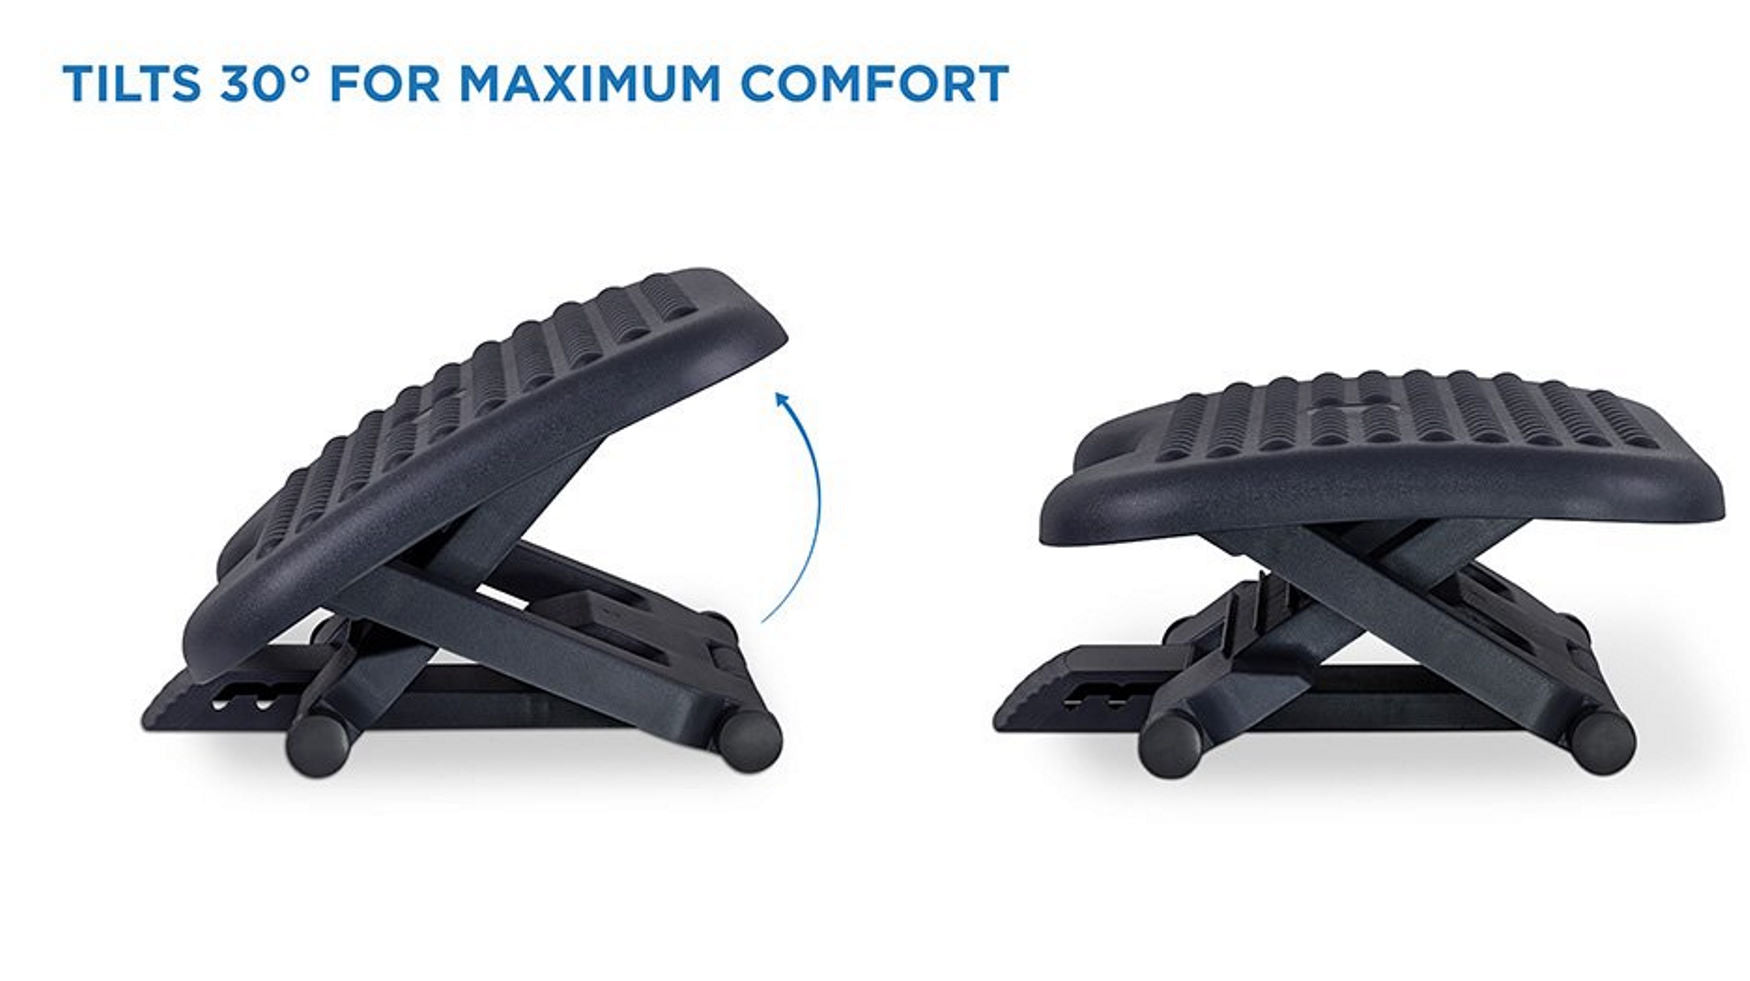 Mount-It! Ergonomic Footrest for Office or Home | Under Desk Tilting  Footrest | Adjustable Desk Foot Rest with Massaging Surface and 3 Tilt  Positions